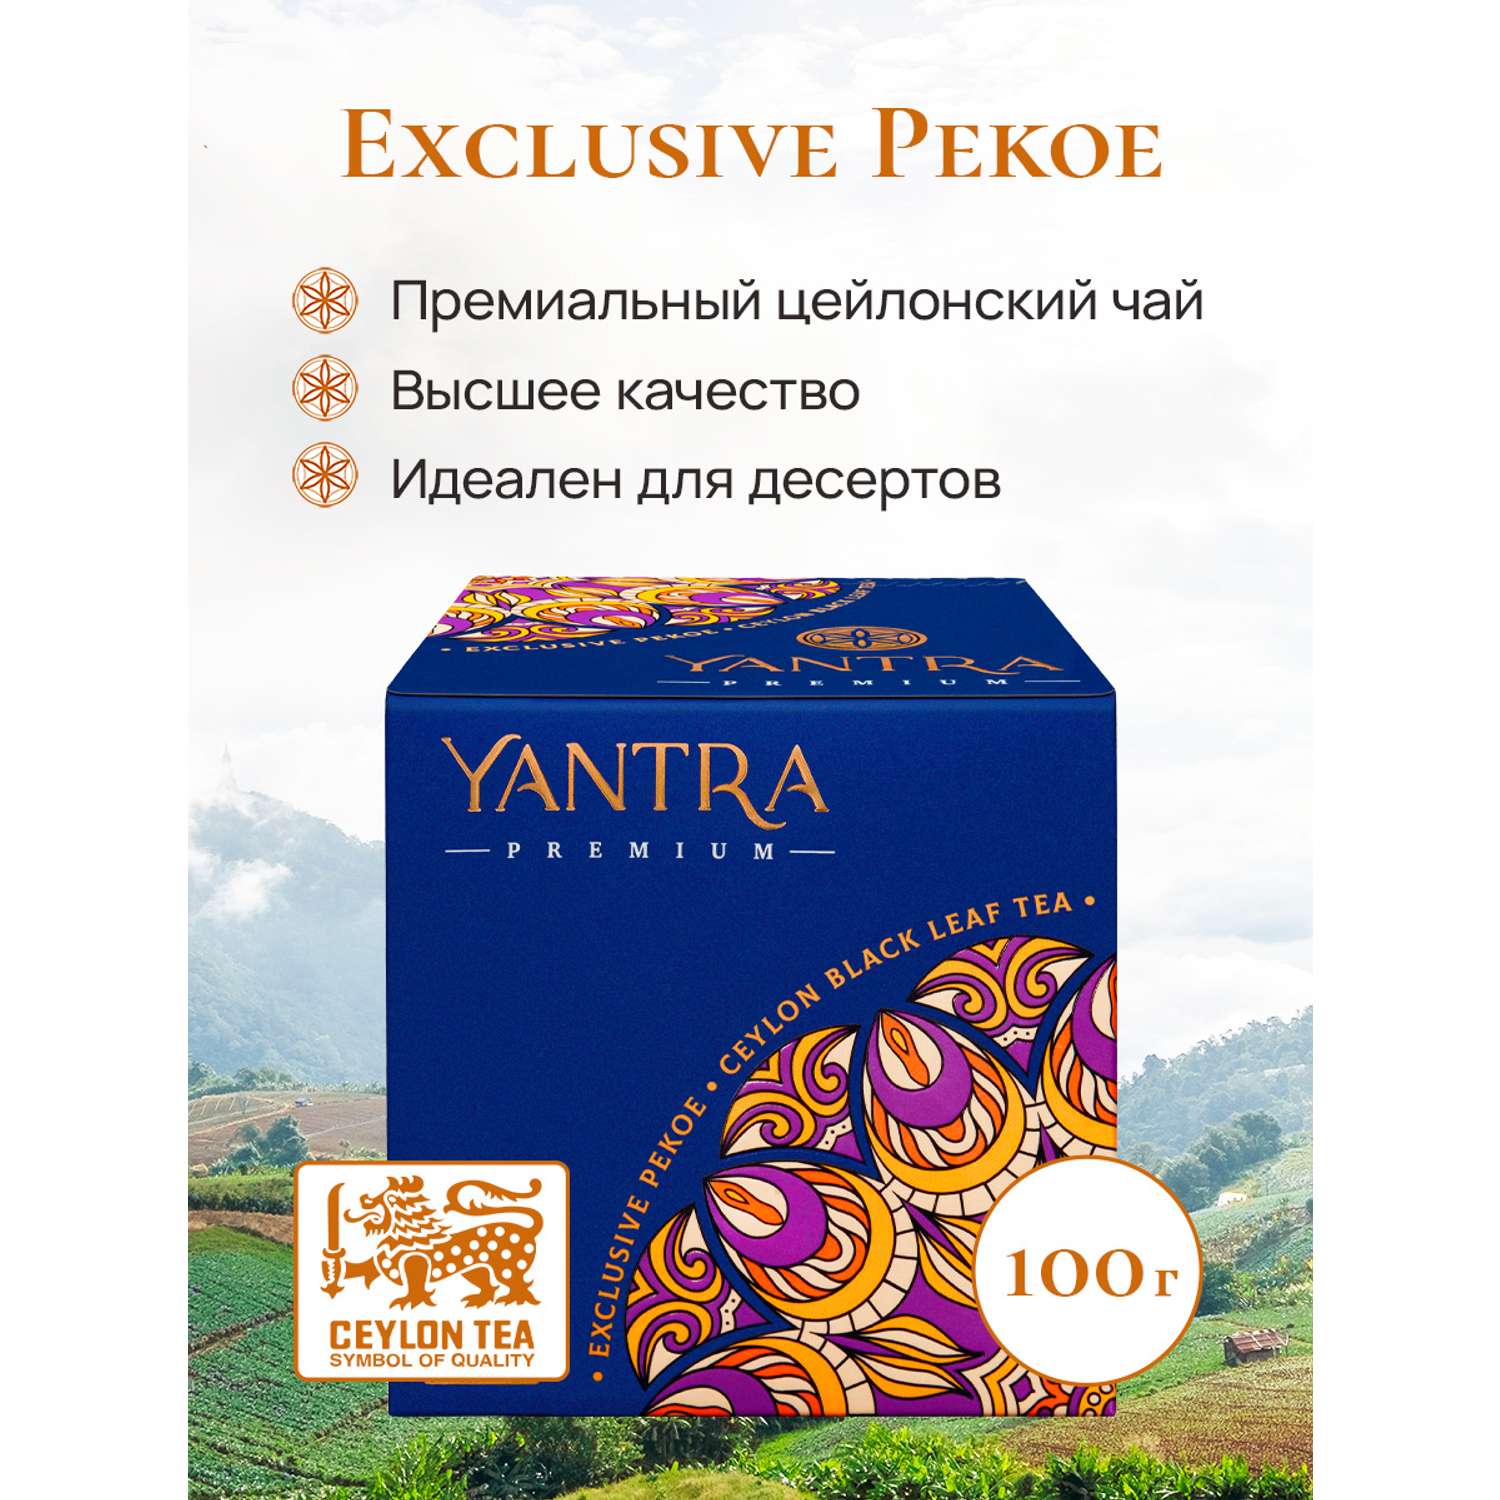 Чай Премиум Yantra чёрный листовой стандарт Exclusive Pekoe 100 г - фото 4